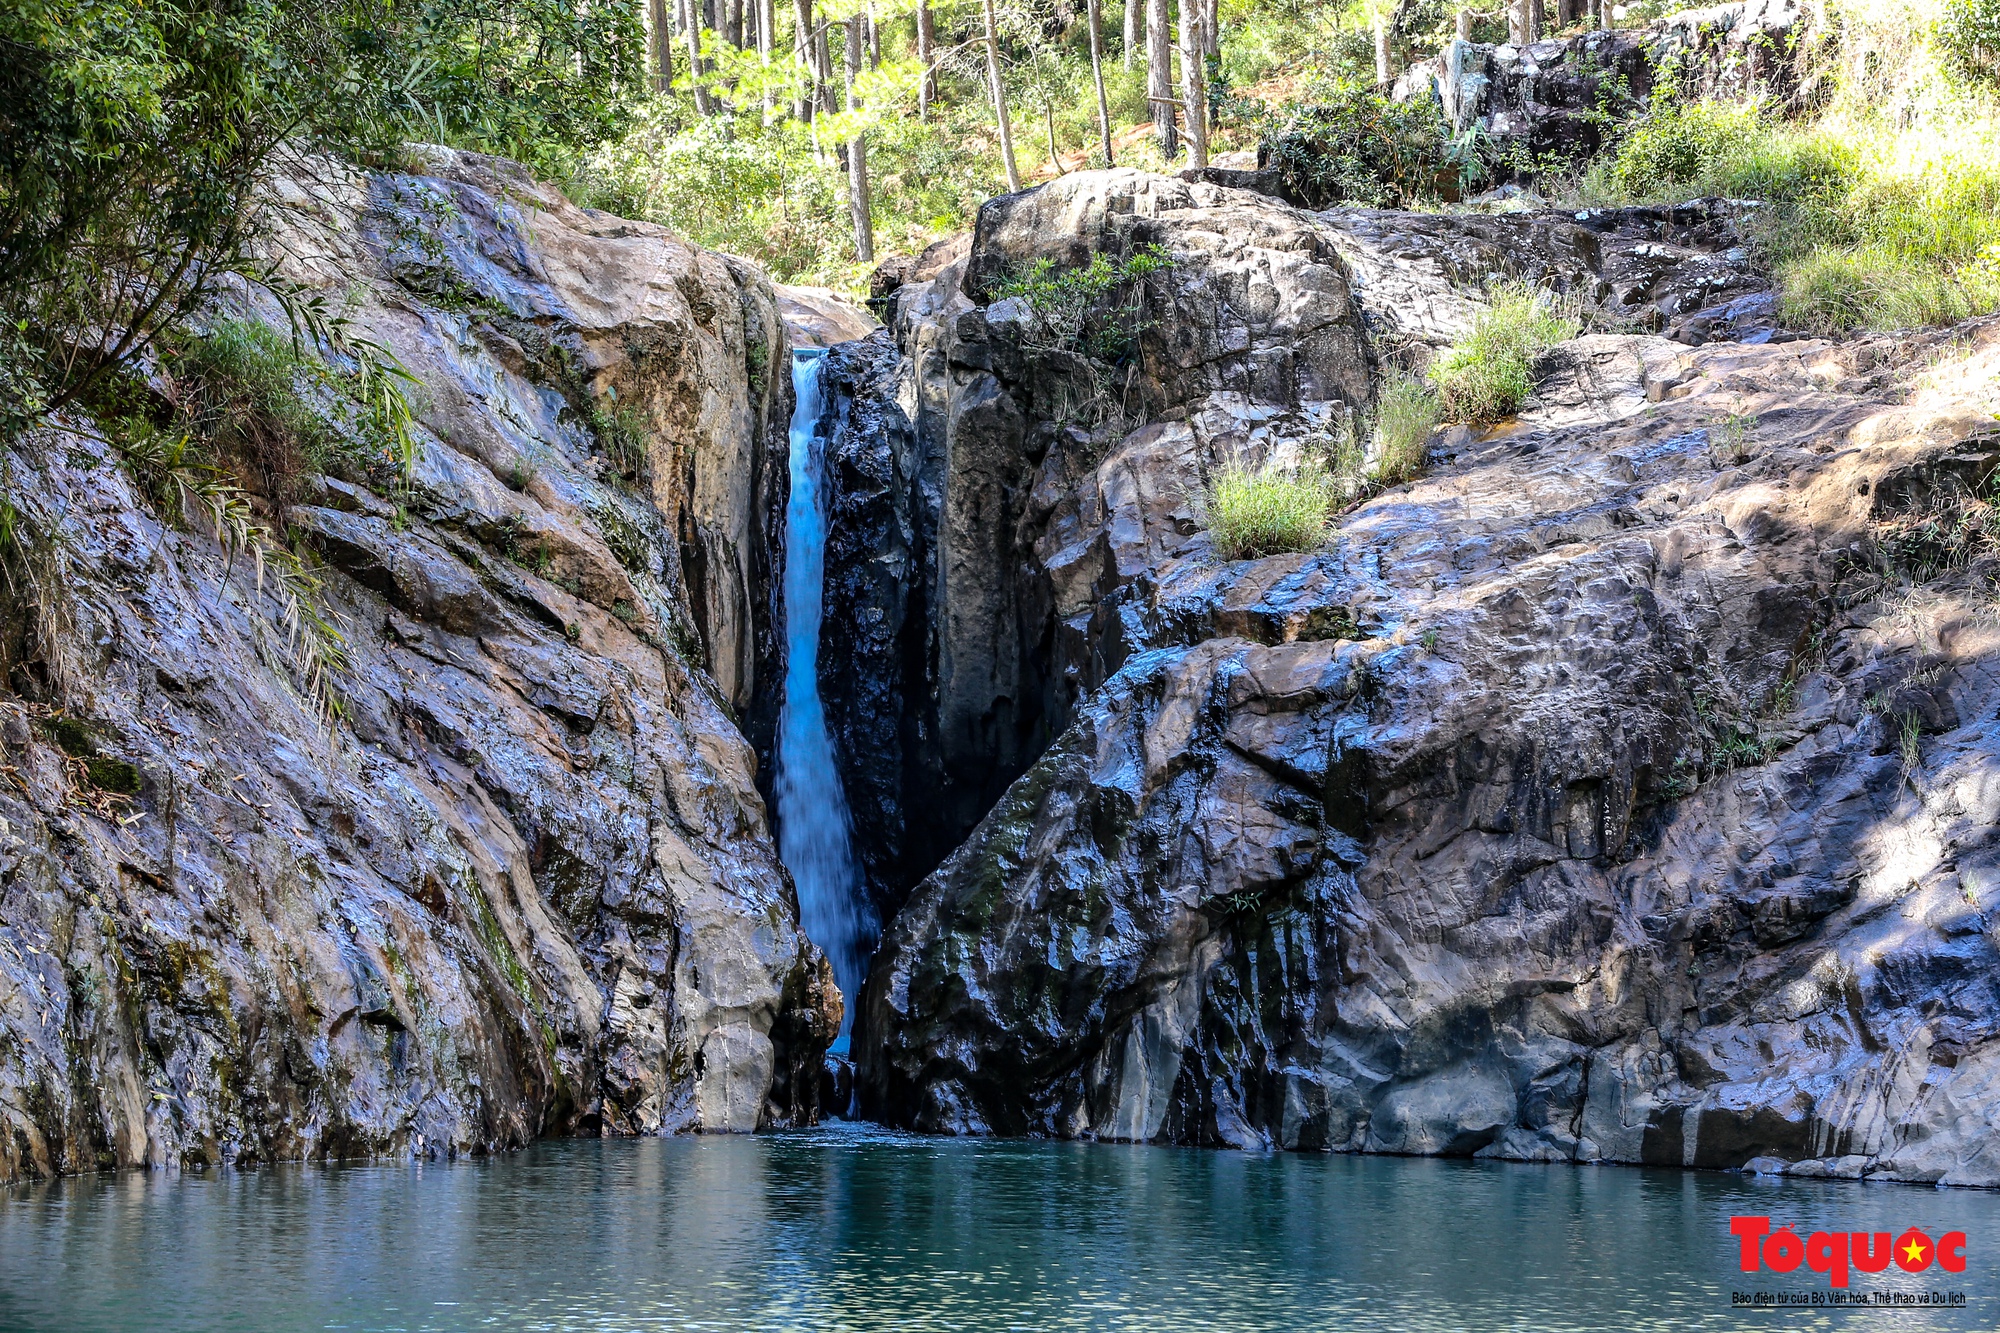 Thác Ankroet là một trong những thác nước đẹp ở Đà Lạt. Với độ cao khoảng 30 mét và dòng nước chảy xiết, bạn sẽ cảm nhận được sức mạnh của thiên nhiên. Hãy đến và tận hưởng một mảnh đất thiên nhiên tuyệt vời ở Đà Lạt. Hình ảnh sẽ đưa bạn đến với thác nước tuyệt đẹp này.